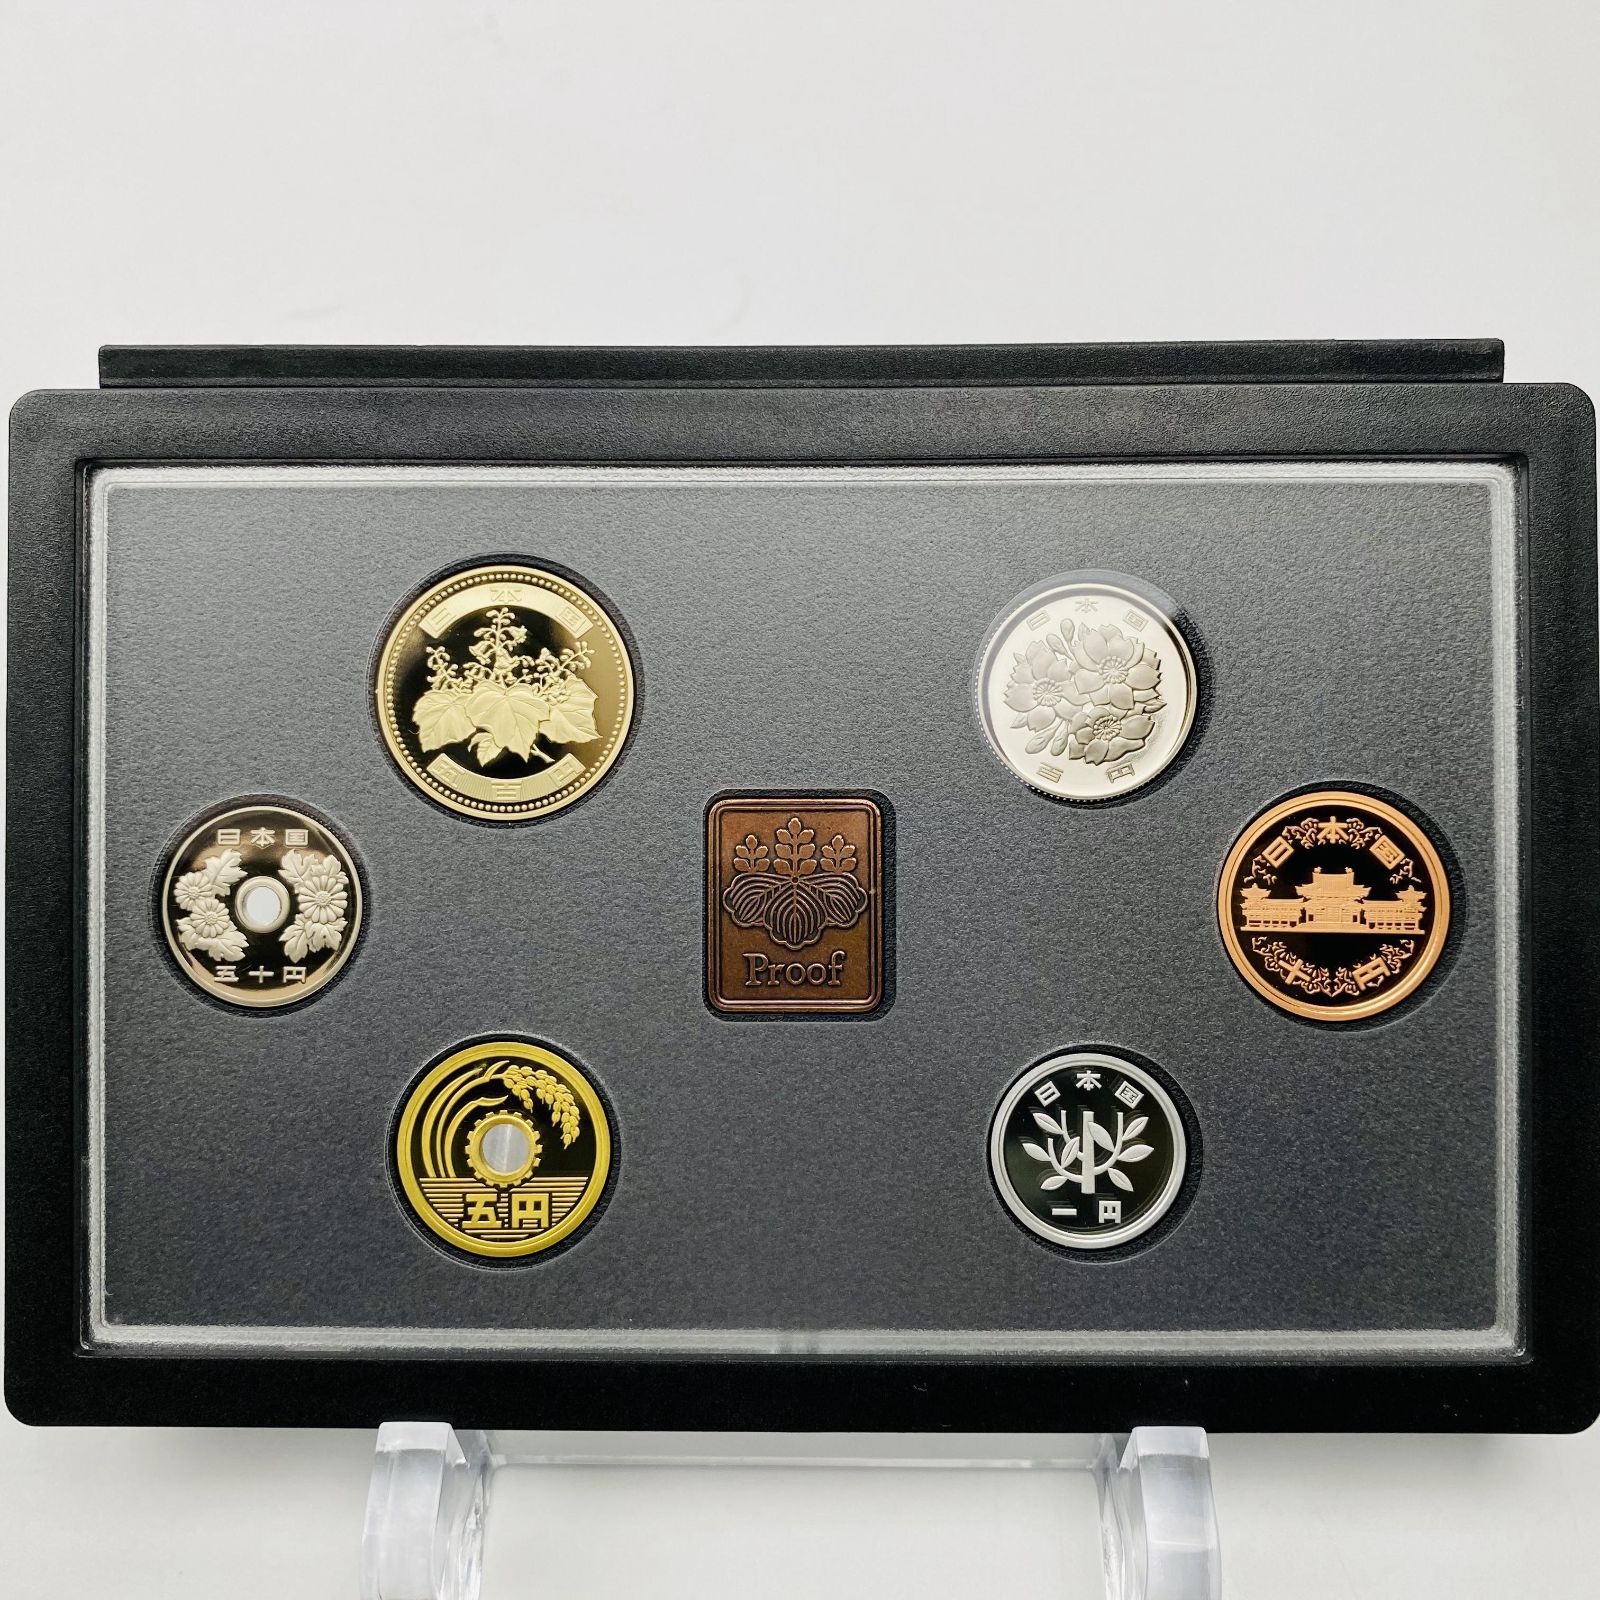 プルーフ貨幣セット 2009年 平成21年 額面666円 年銘板有 全揃い 通常 